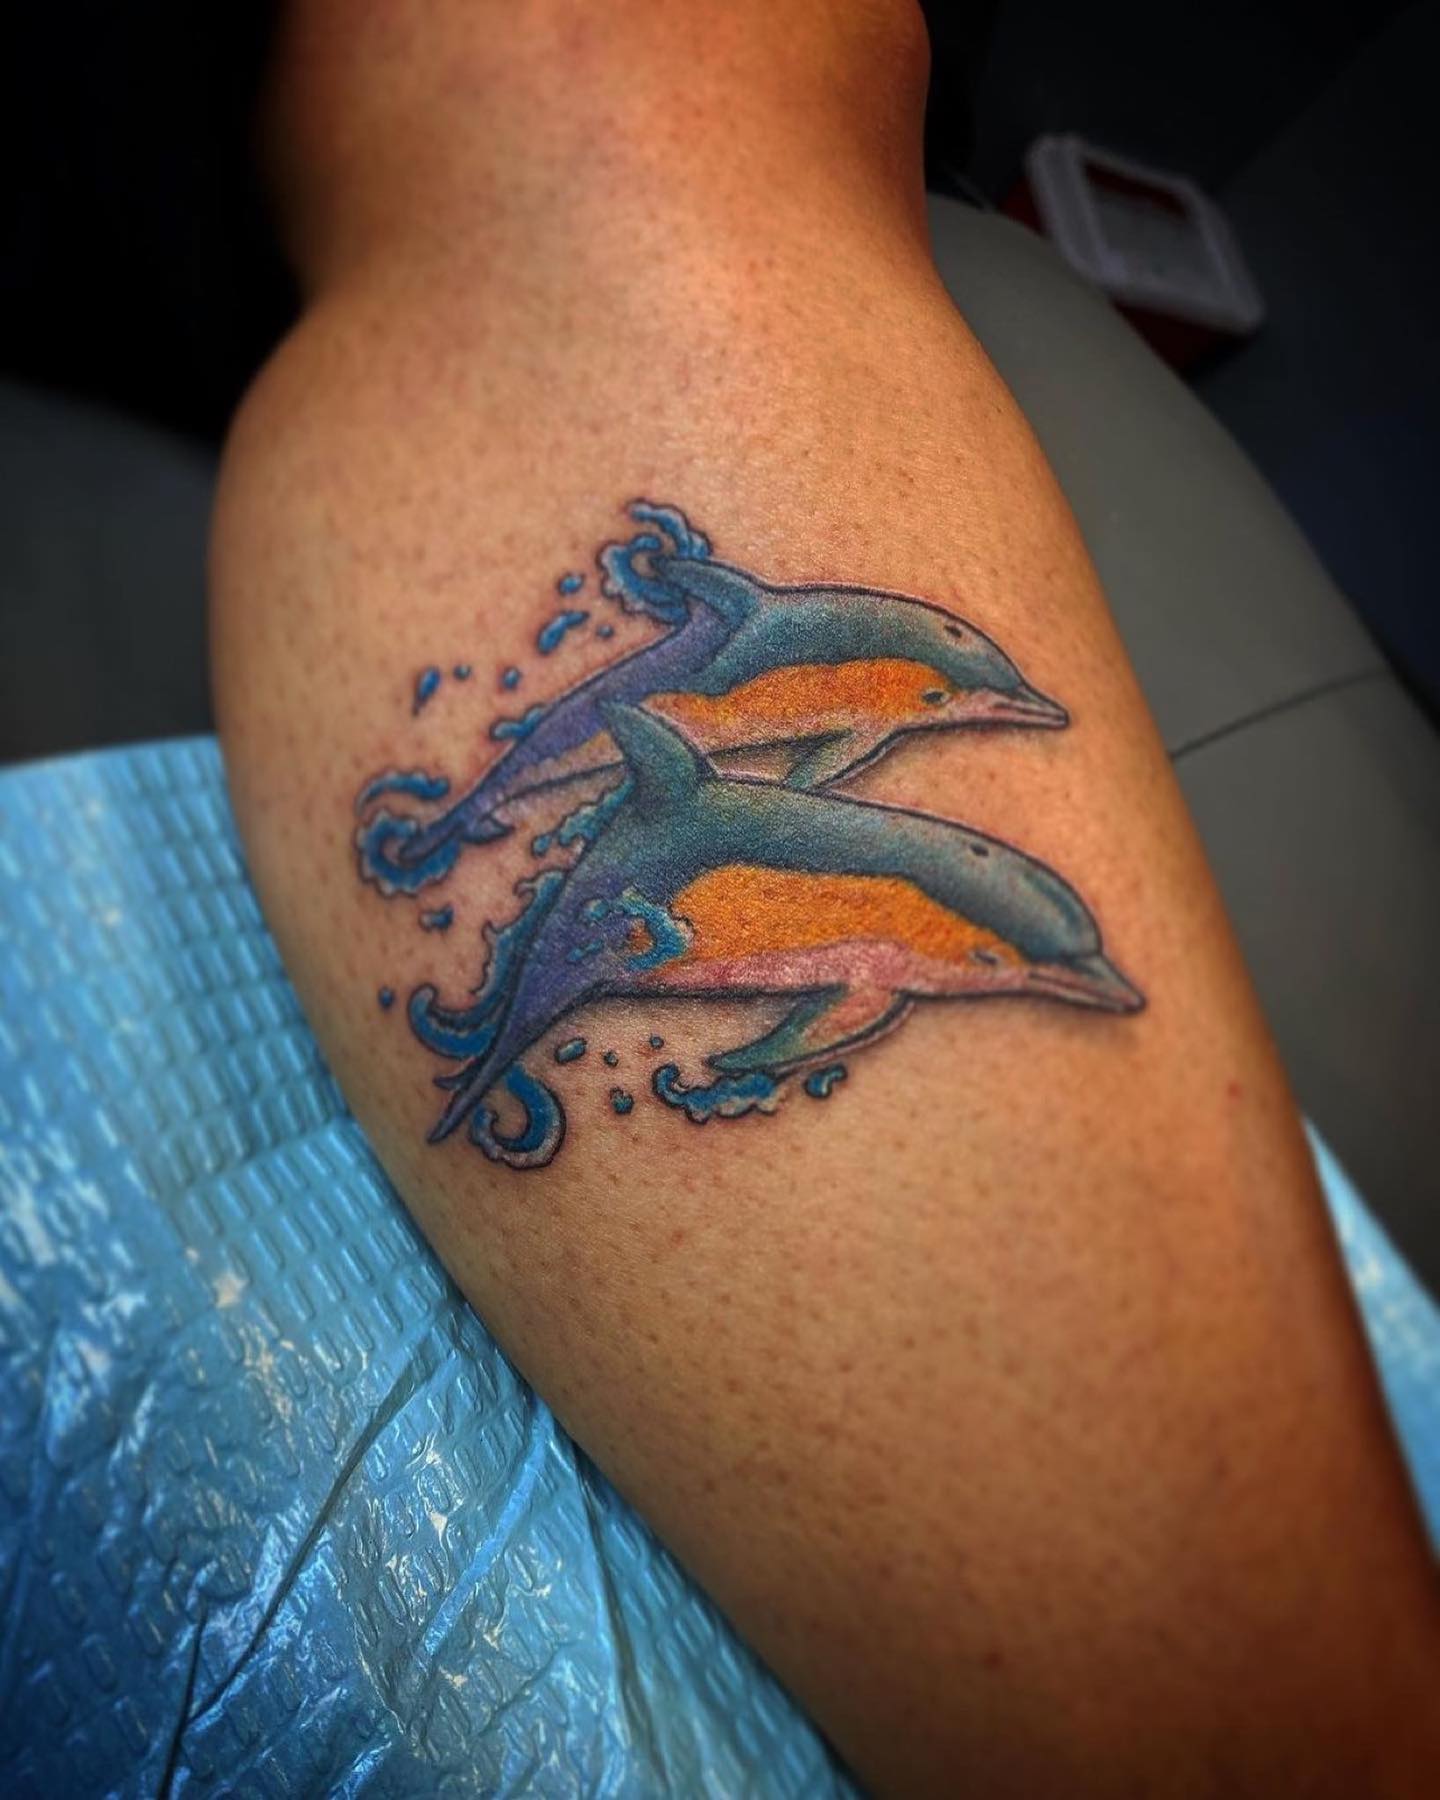 Small Dolphin Cute Easy Tattoo Design  Small Dolphin Tattoos  Small  Tattoos  MomCanvas